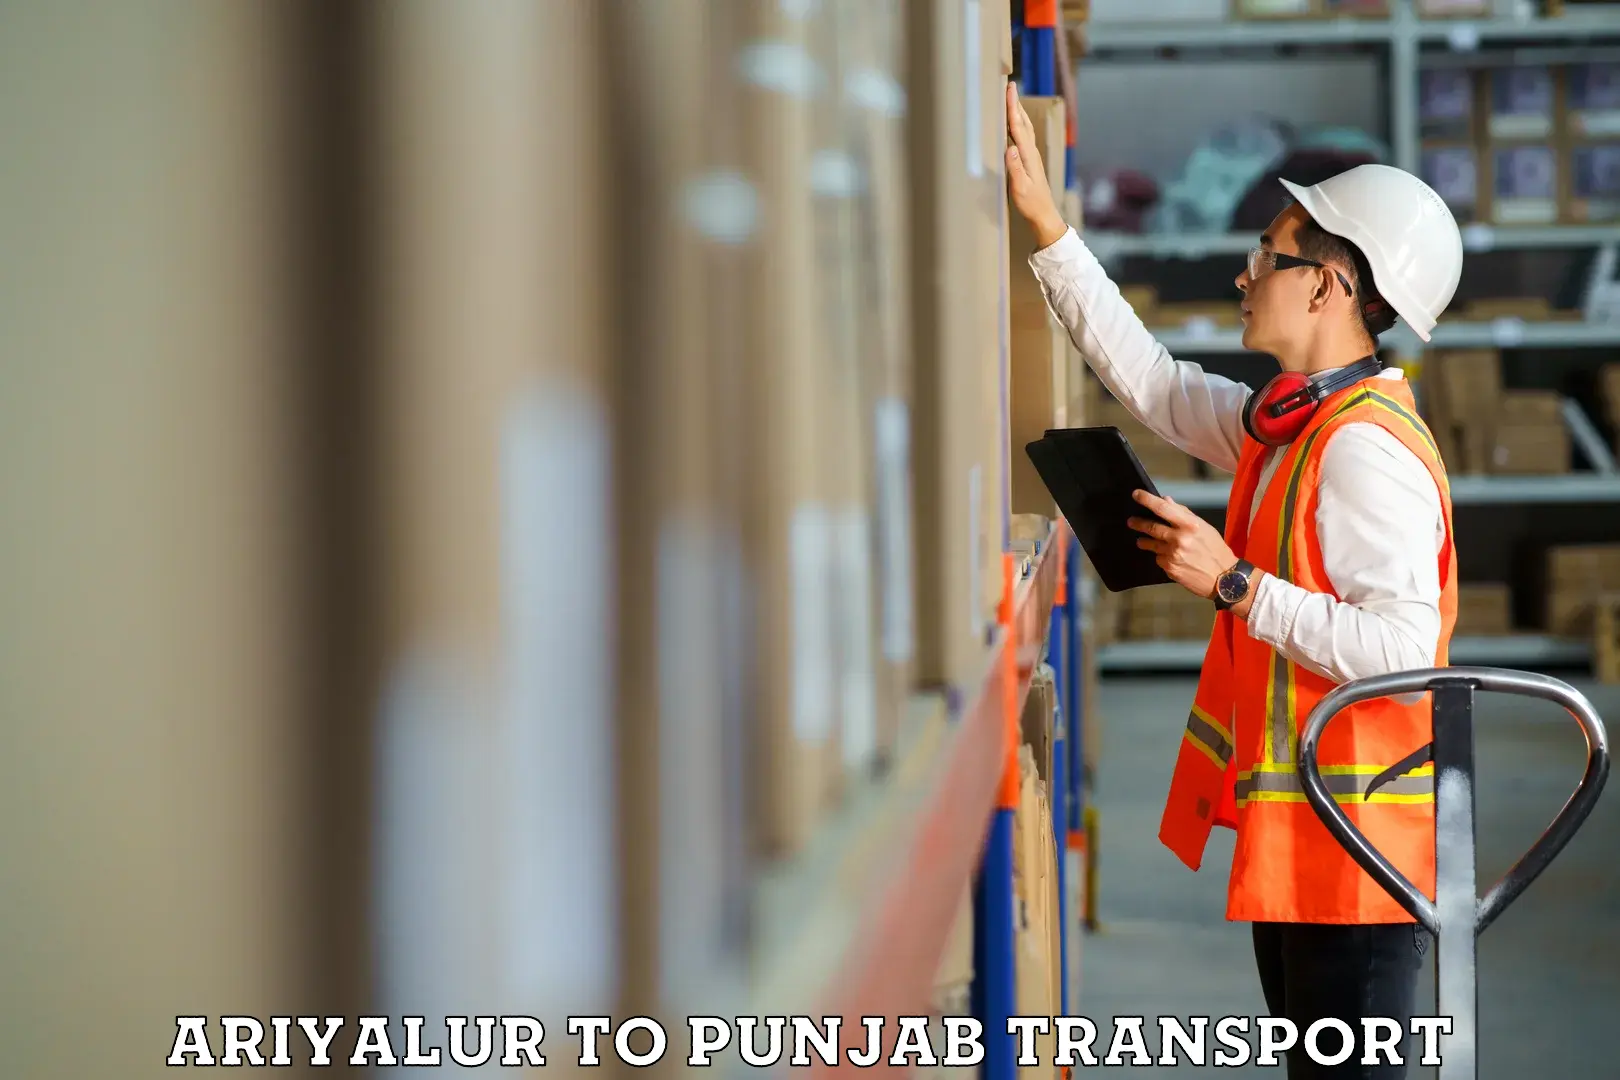 Furniture transport service Ariyalur to Punjab